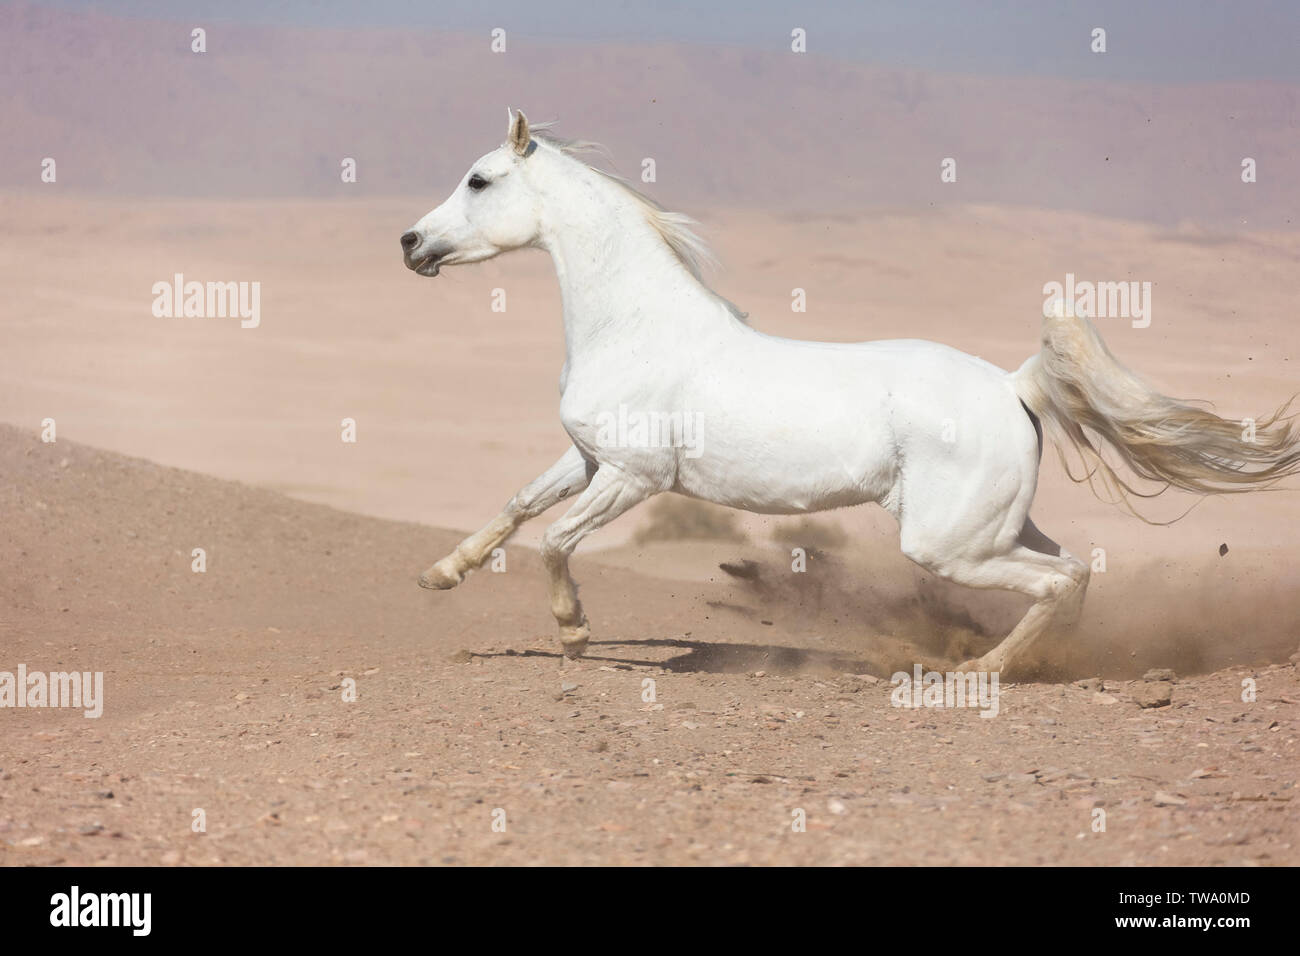 Barb cavallo. Grigio mare al galoppo nel deserto. Egitto Foto Stock